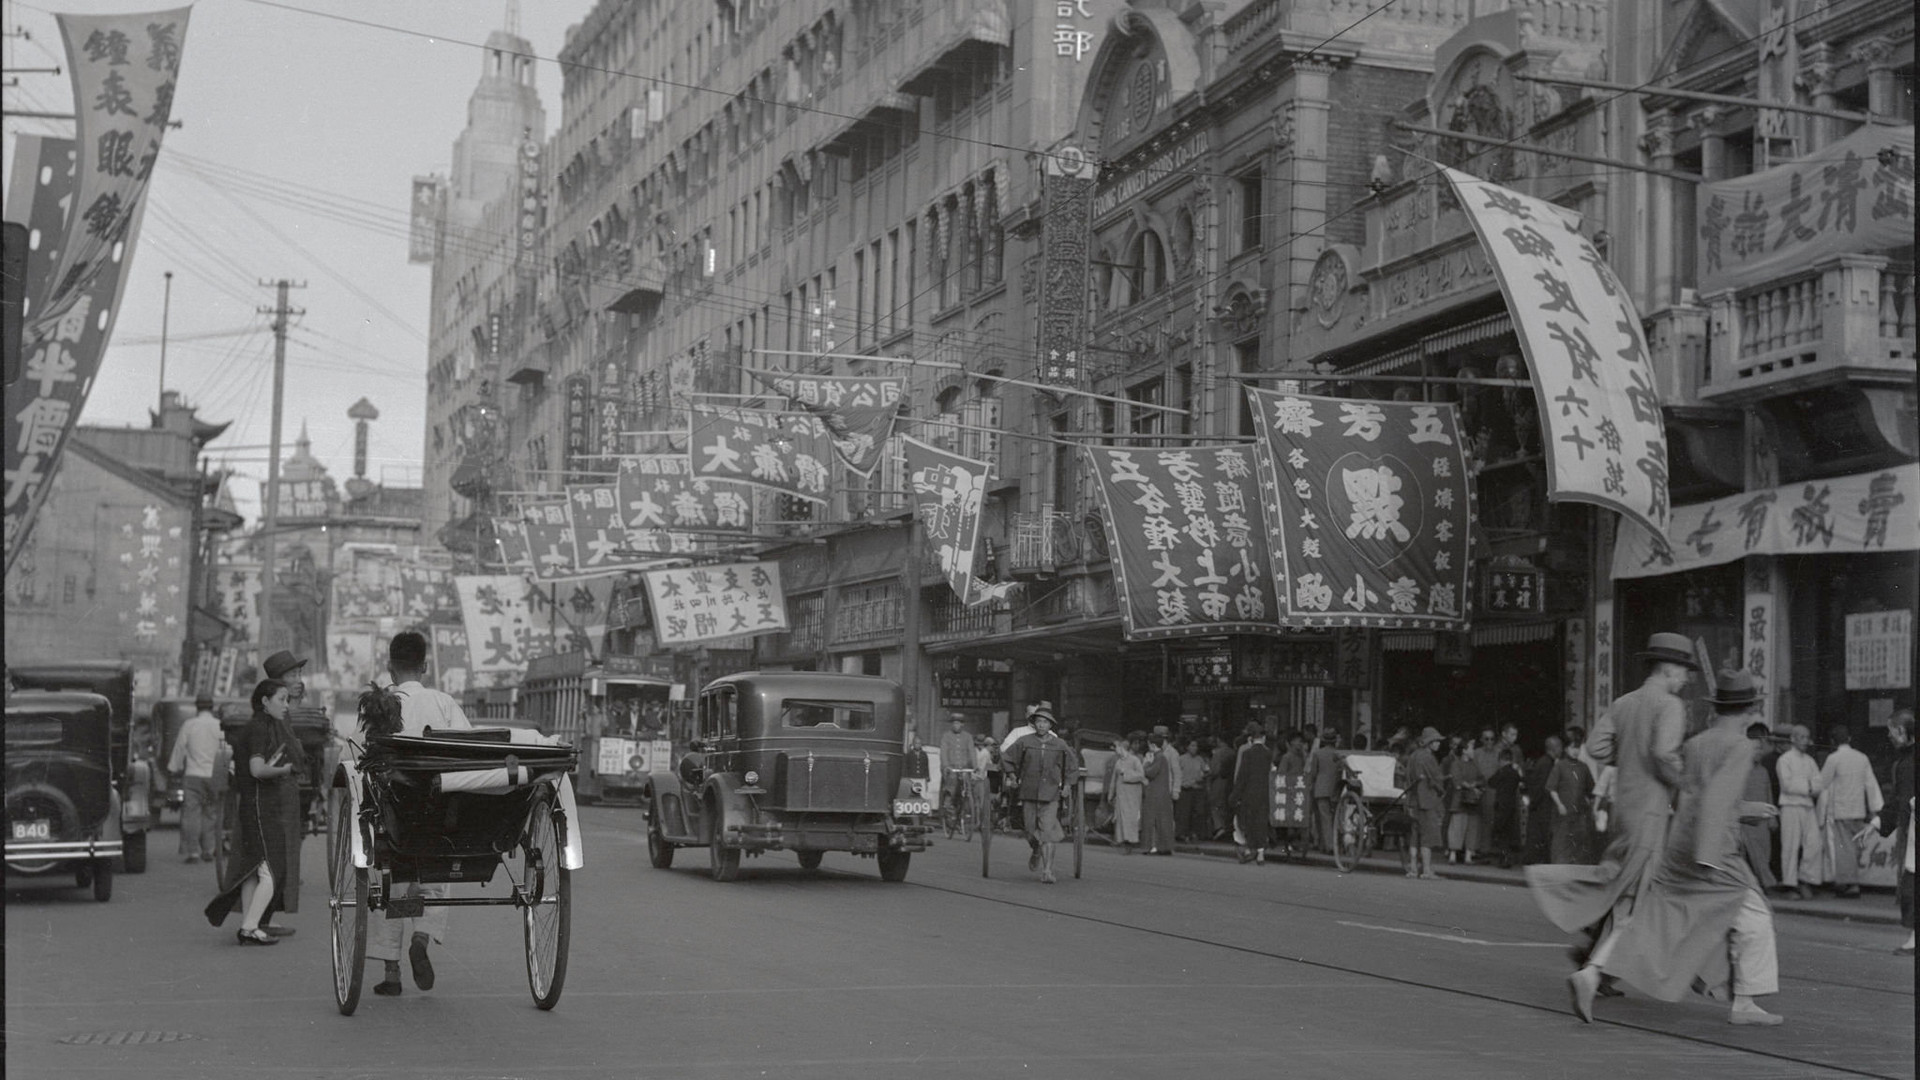 Con đường Nam Kinh nhộn nhịp ở Thượng Hải năm 1934. Ảnh: Financial Times.